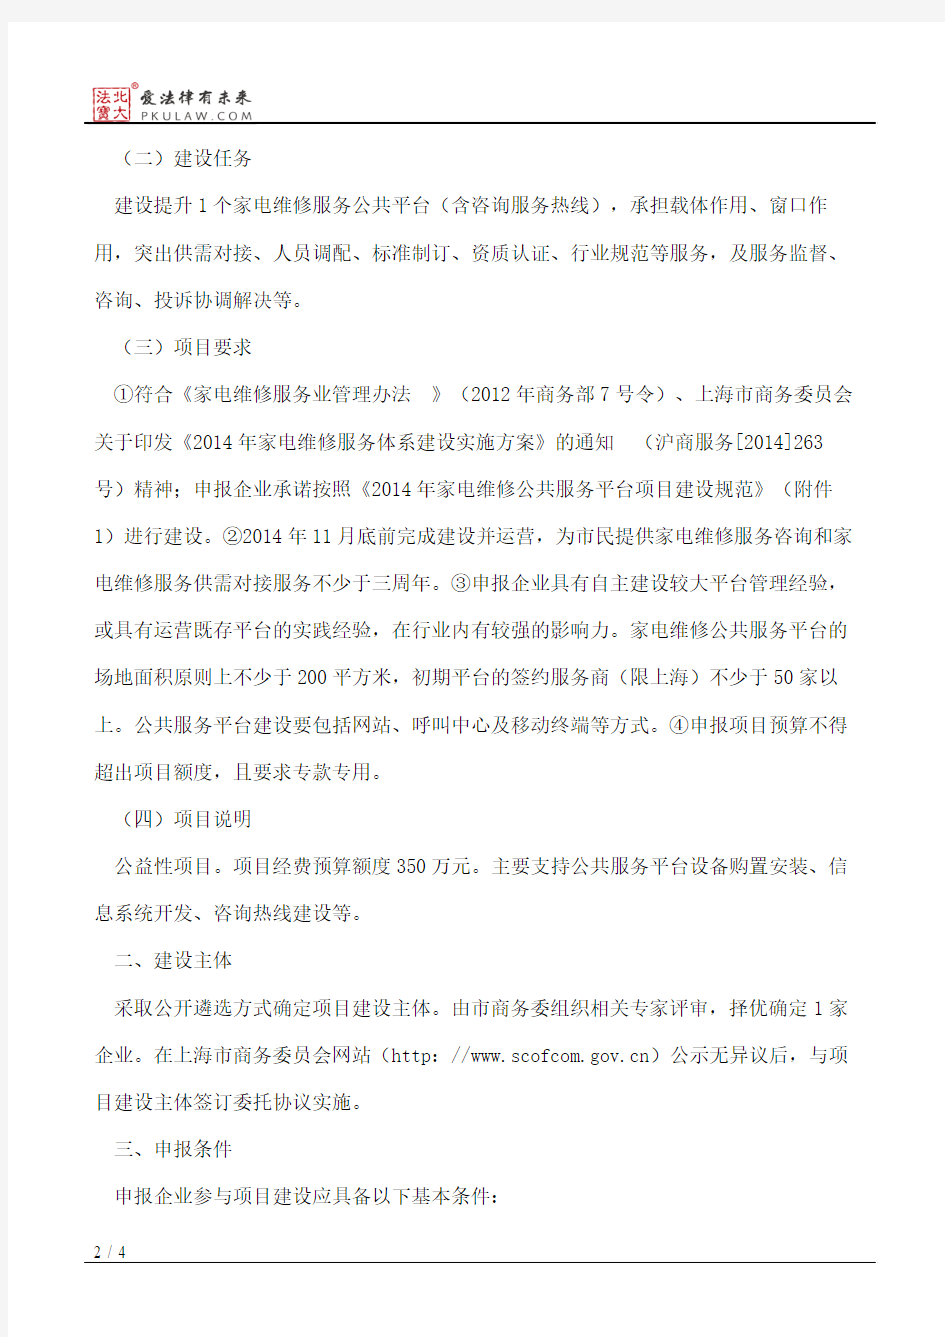 上海市商务委员会关于家电维修公共服务平台(含咨询服务热线)项目